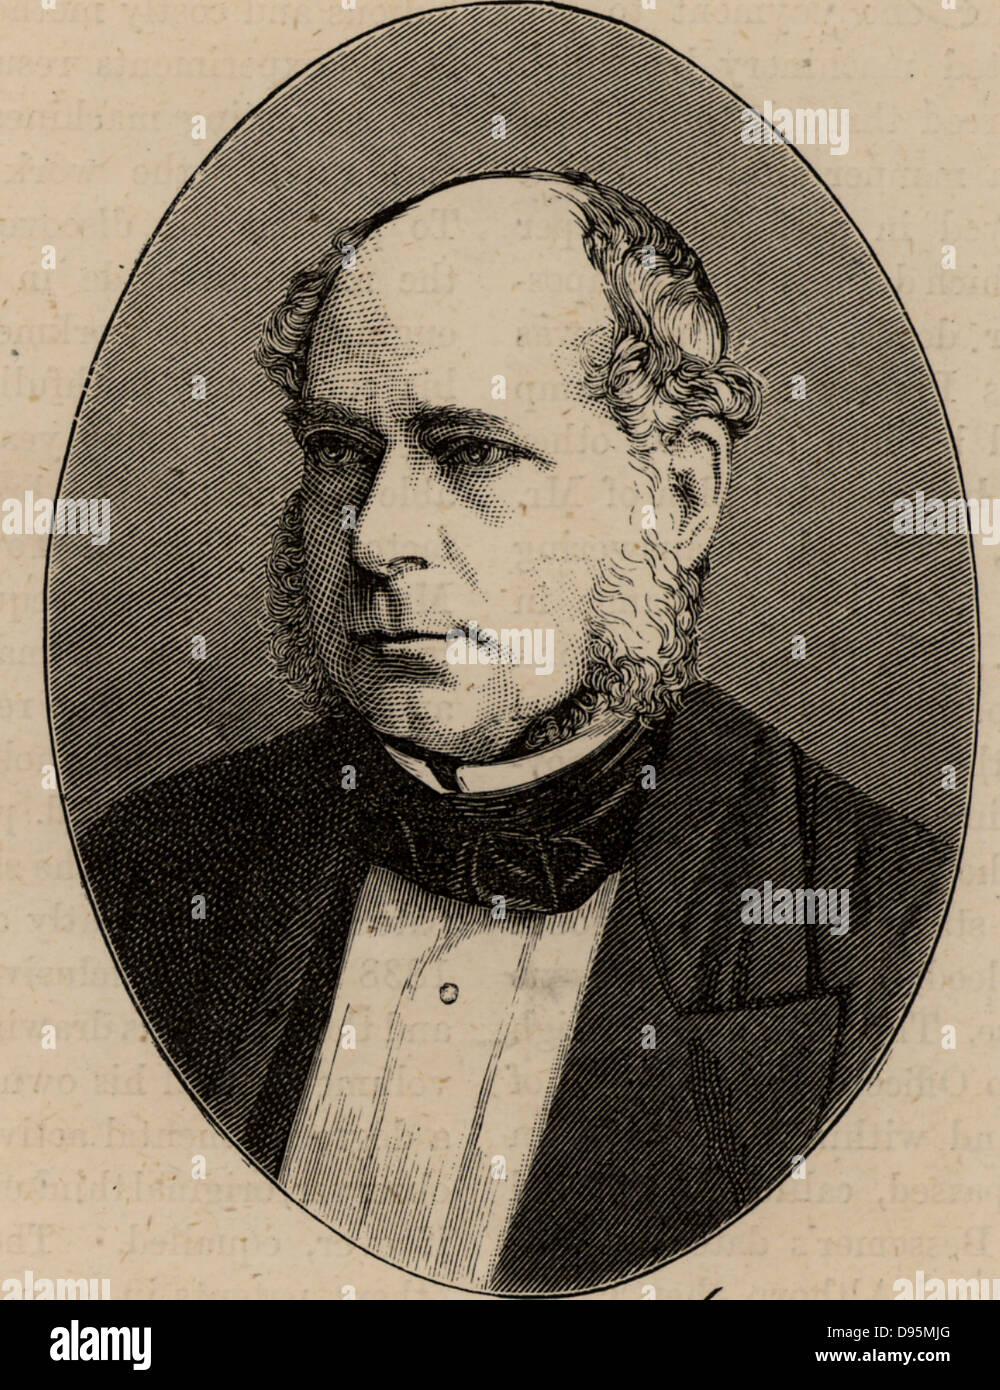 Henry Bessemer (1813-1893) ingénieur civil anglais, inventeur et industriel. Parmi ses inventions ont été le processus d'acier Bessemer et le convertisseur Bessemer. Gravure tirée de 'grandes industries de Grande-bretagne' (Londres, c1880) Banque D'Images